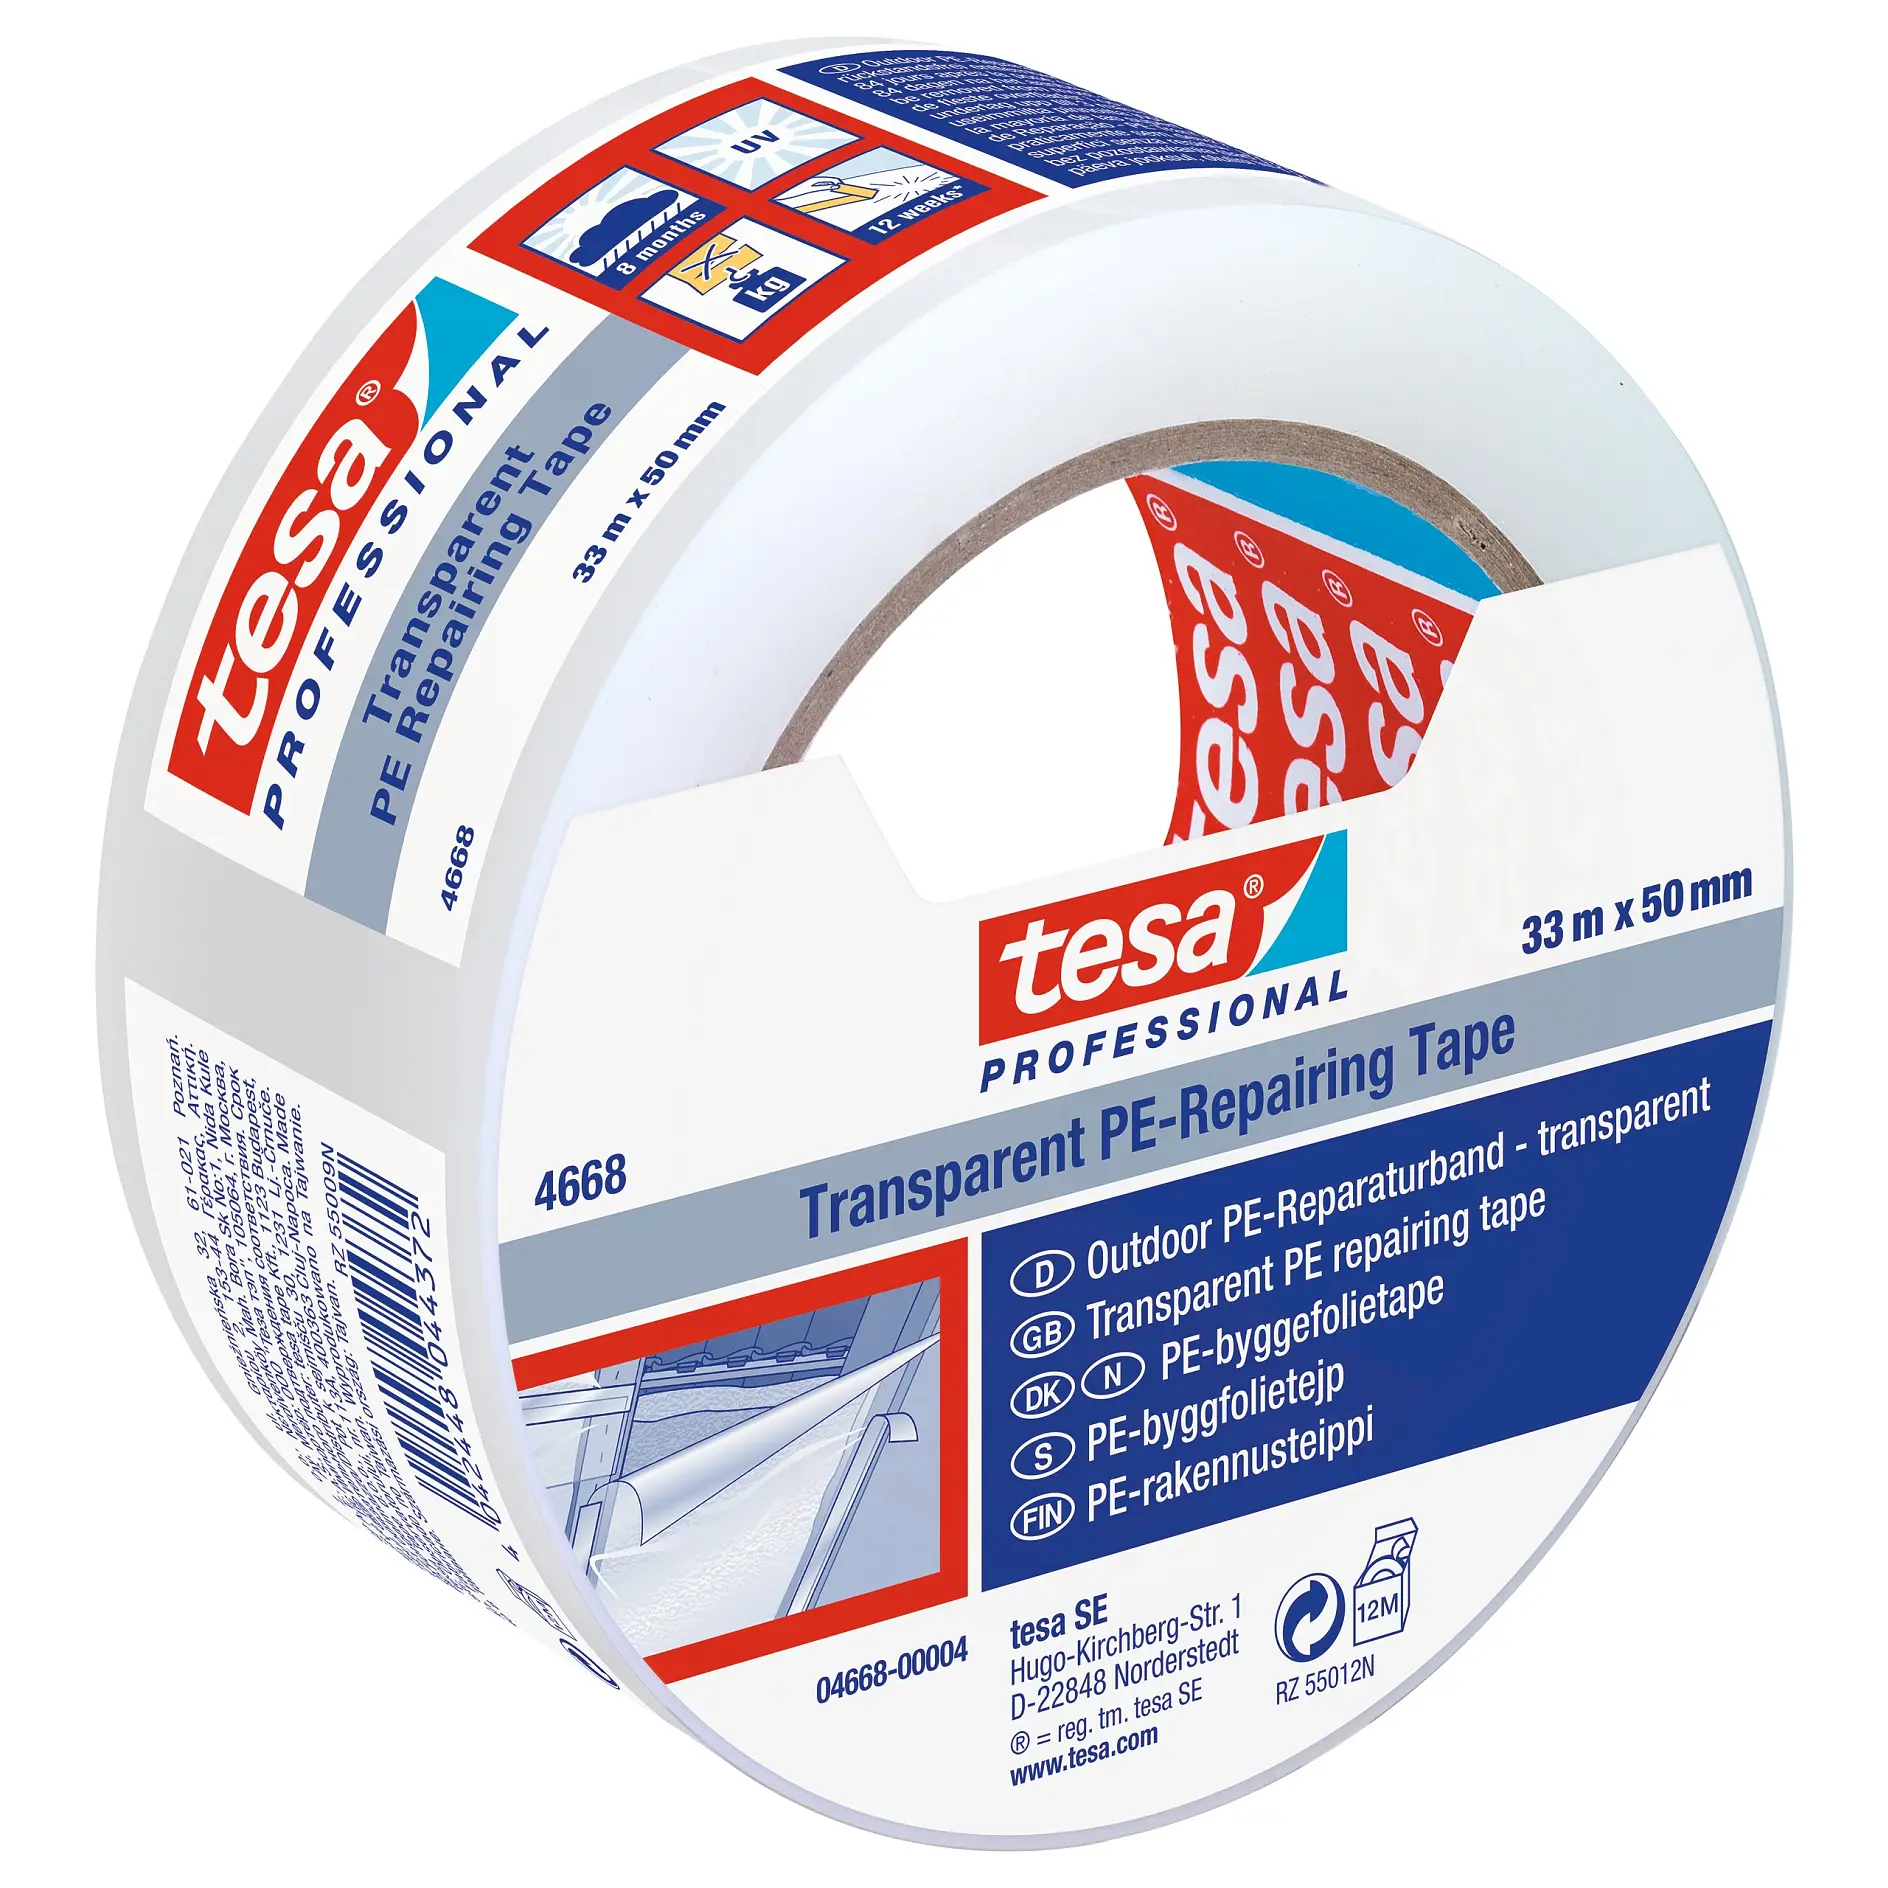 [en-en] tesa Professional Repairing tape PE, transparent, 33m x 50mm